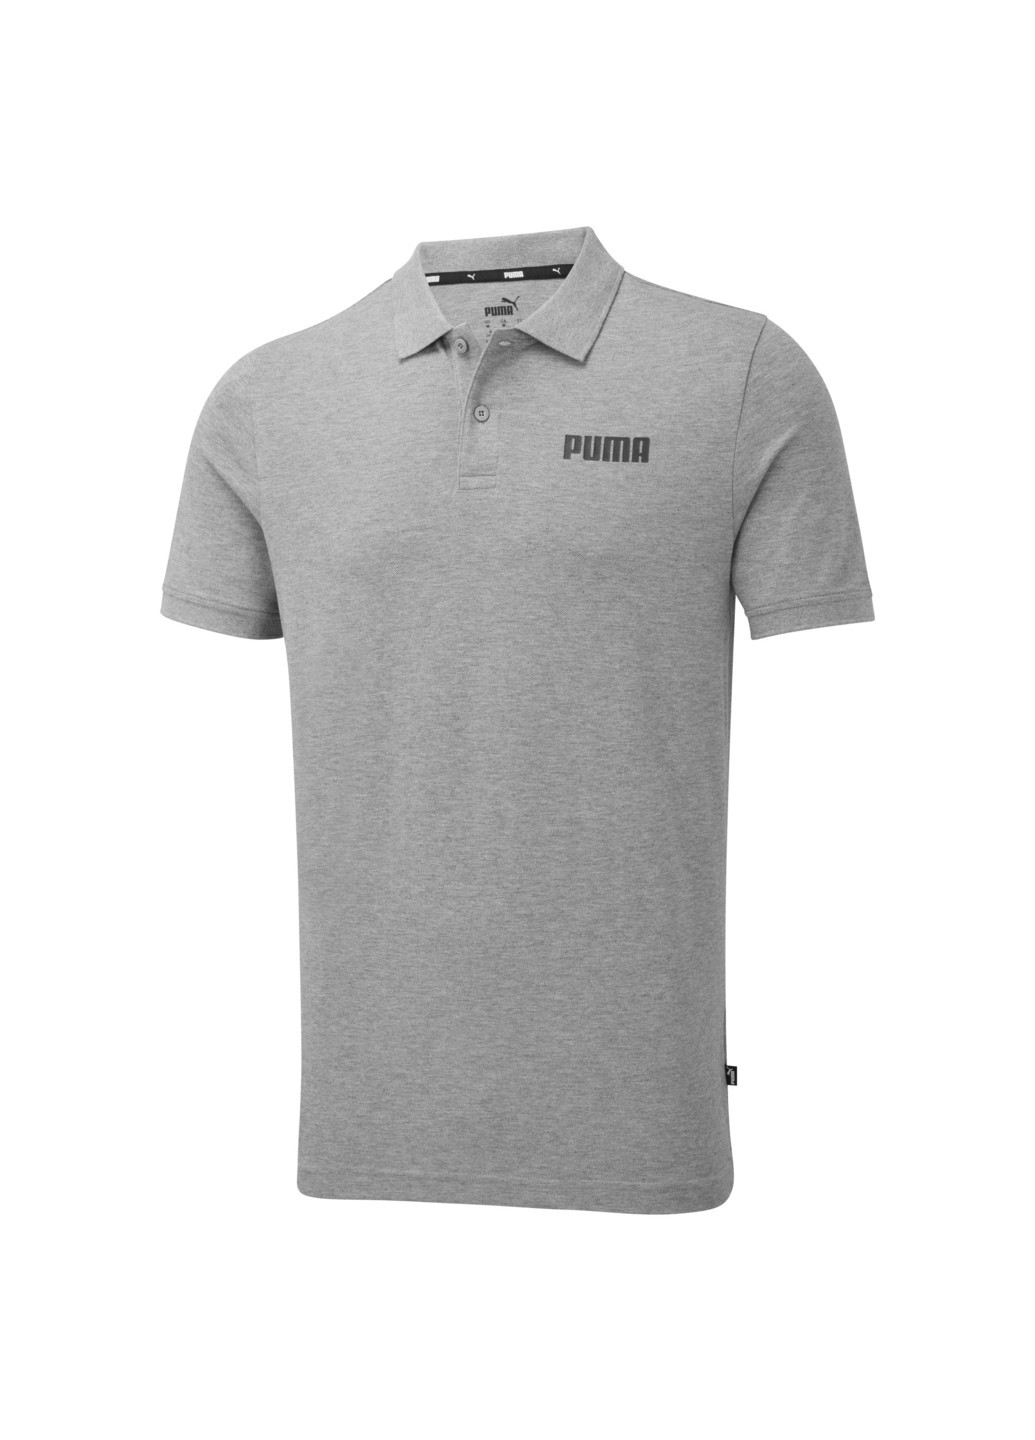 Серая футболка-поло essentials pique men's polo shirt для мужчин Puma однотонная